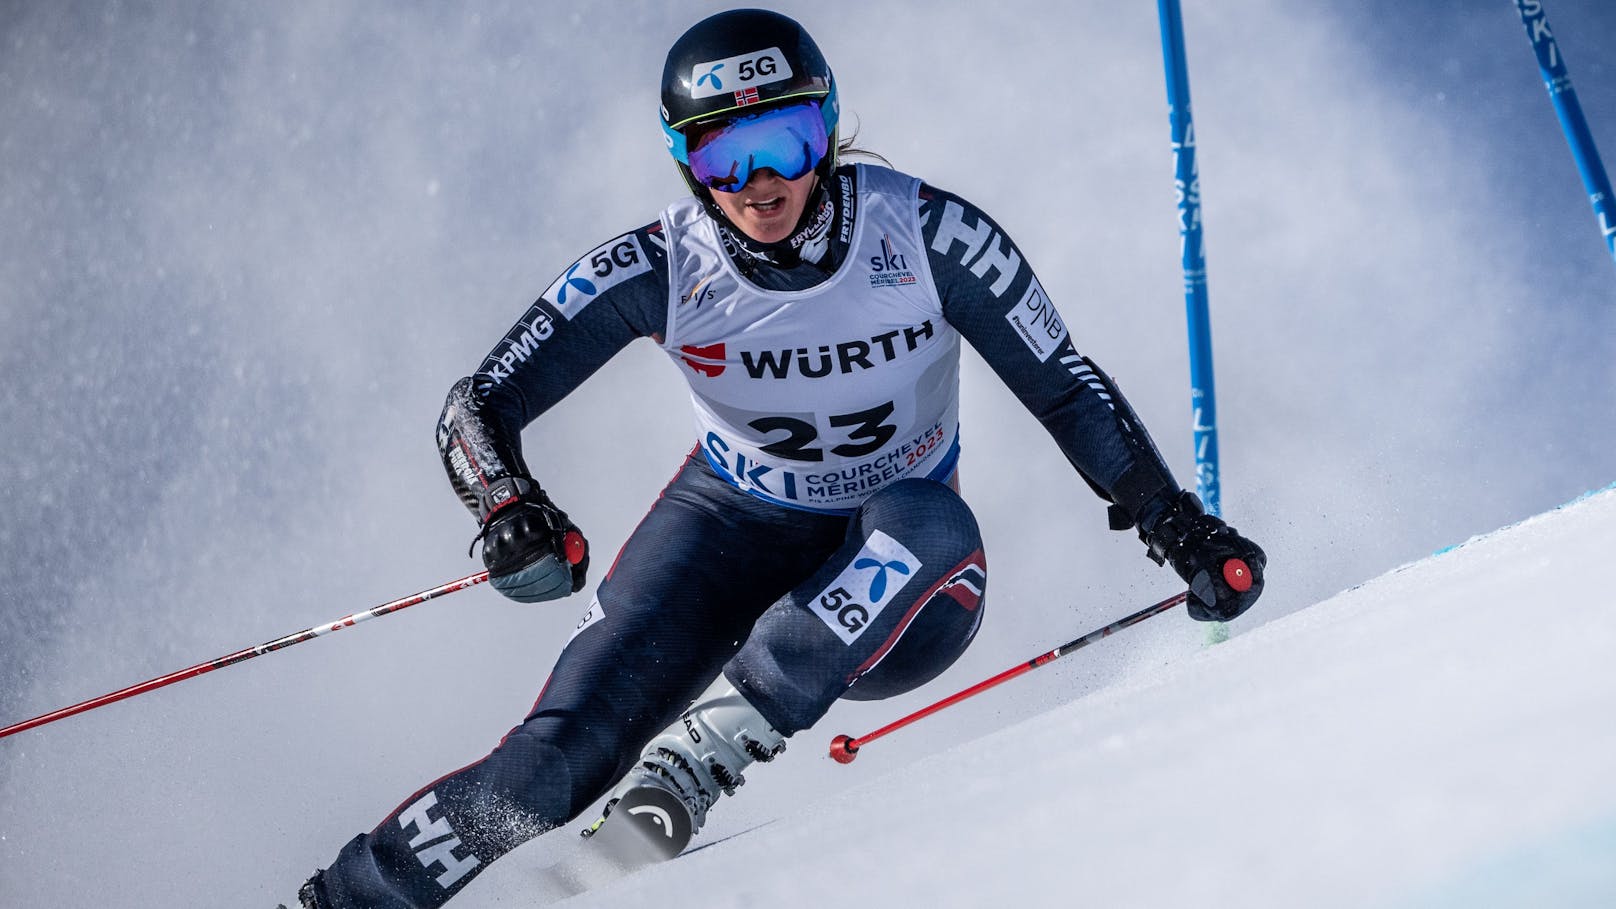 Knie kaputt! Saison-Aus für Ski-Weltmeisterin